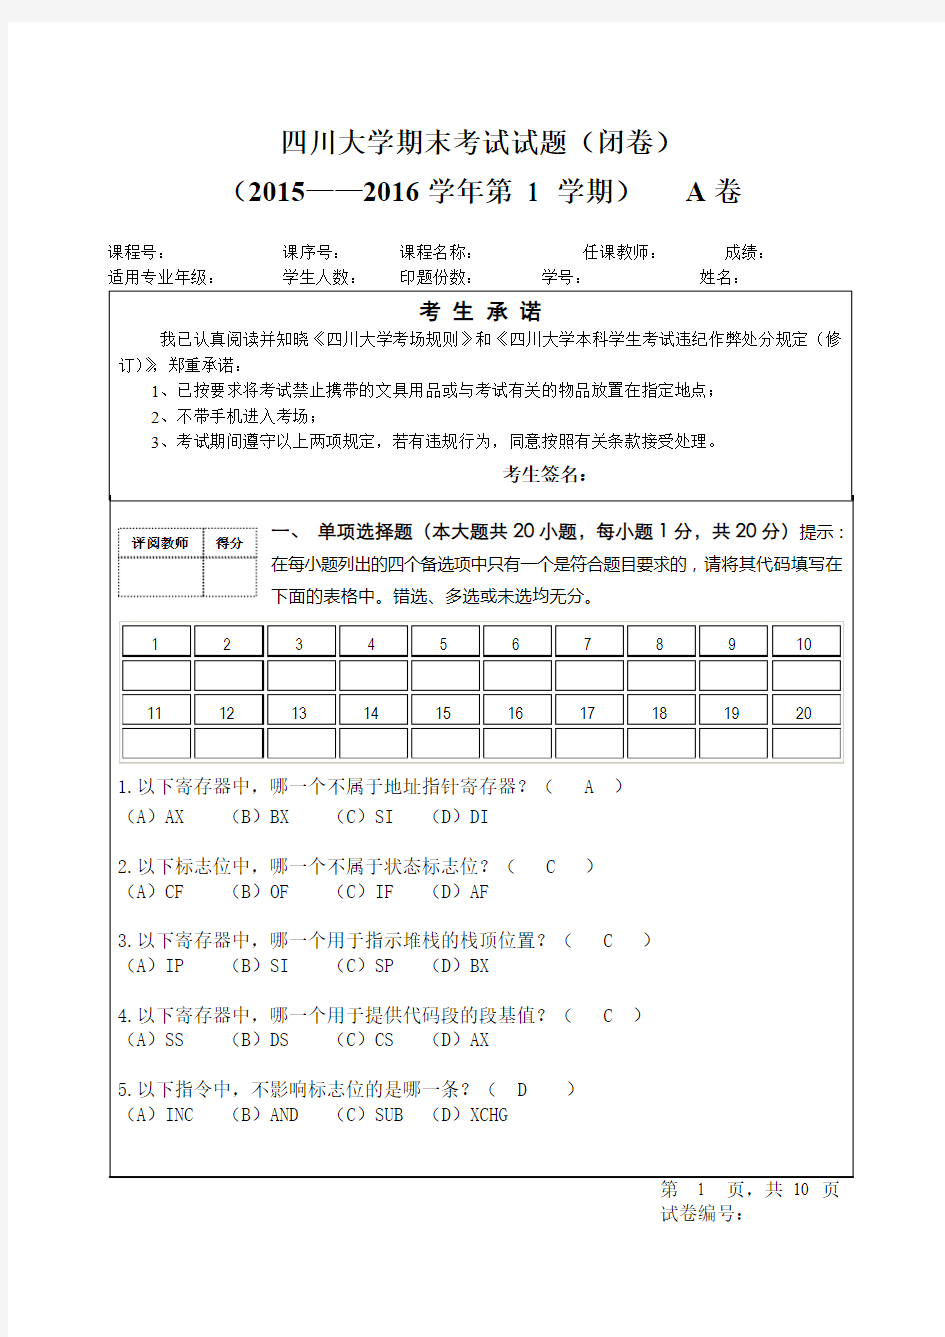 四川大学汇编语言程序设计2015-2016期末试题(附答案)